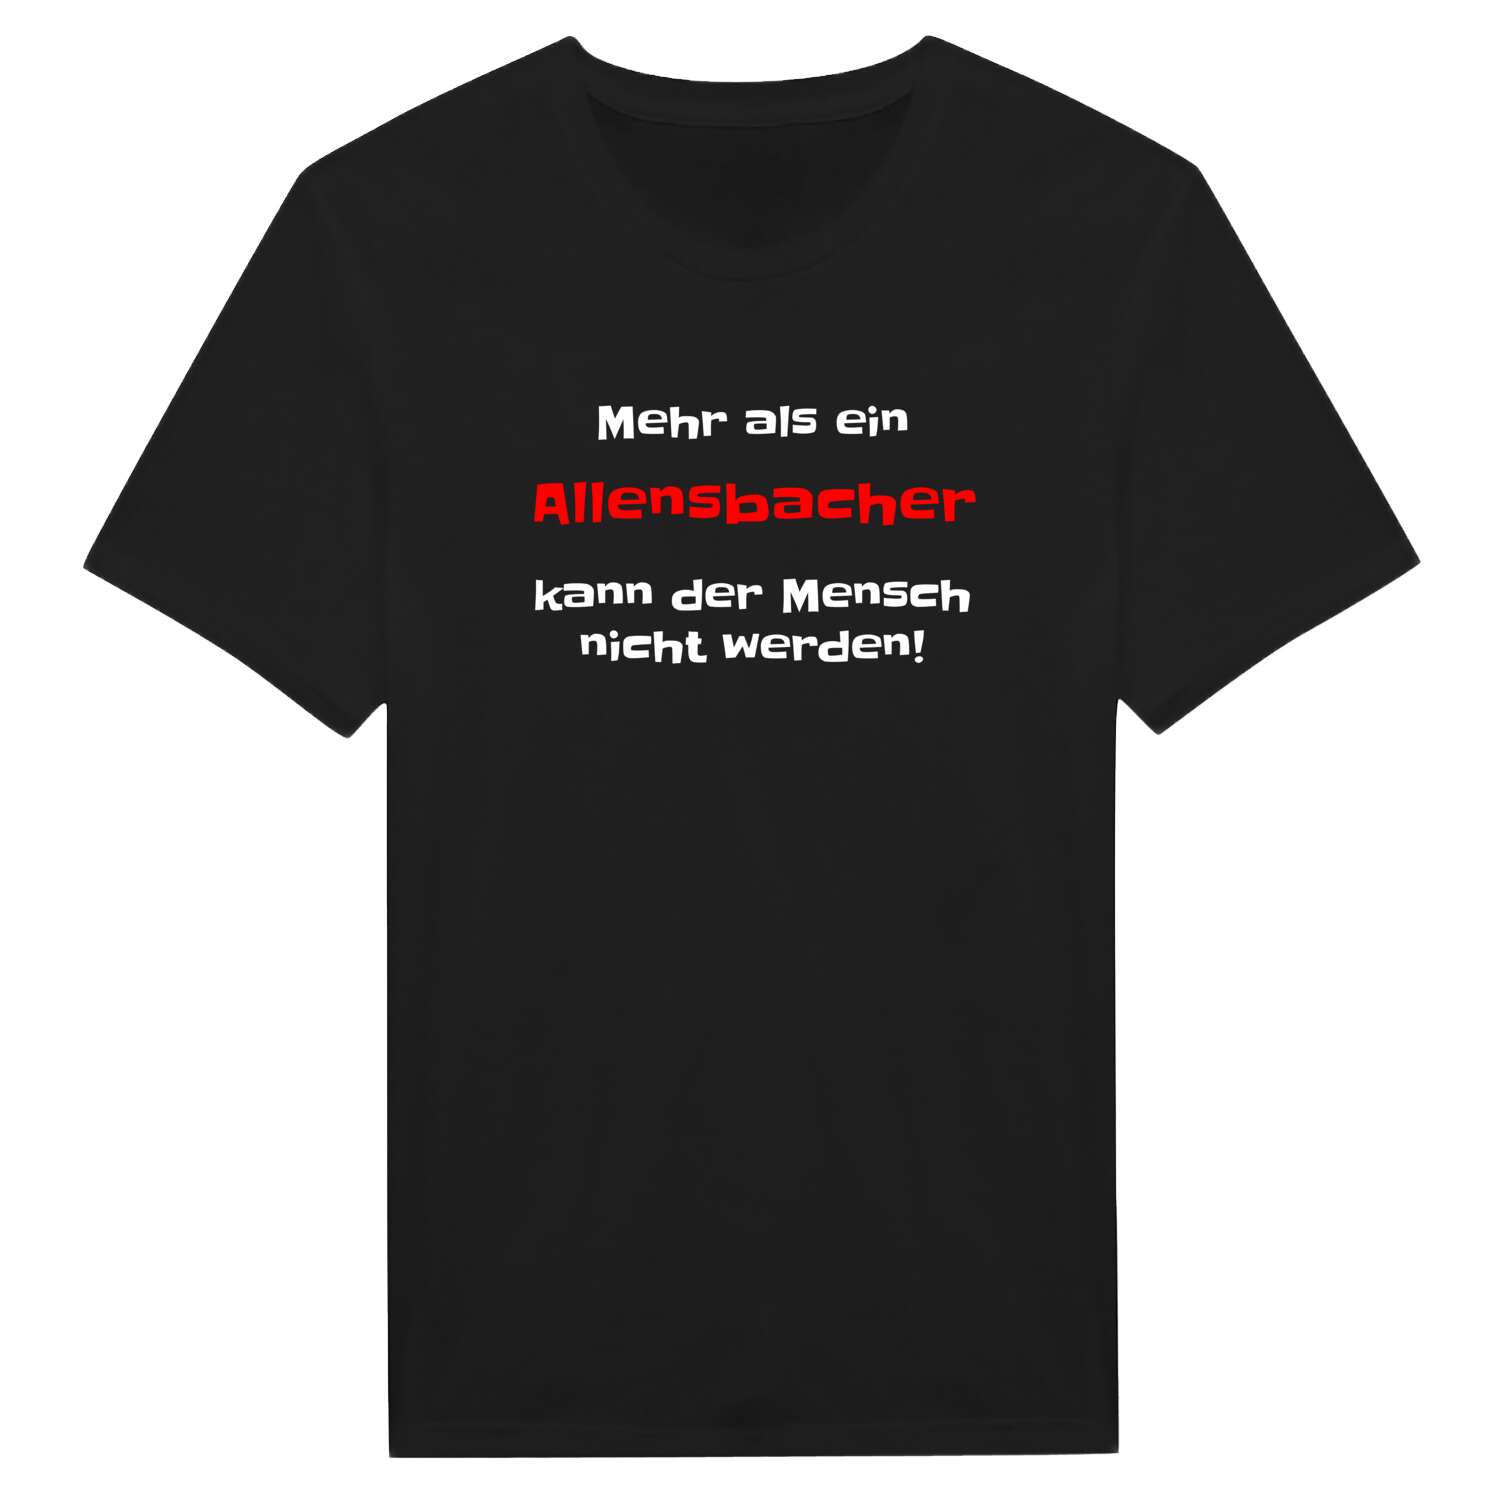 Allensbach T-Shirt »Mehr als ein«